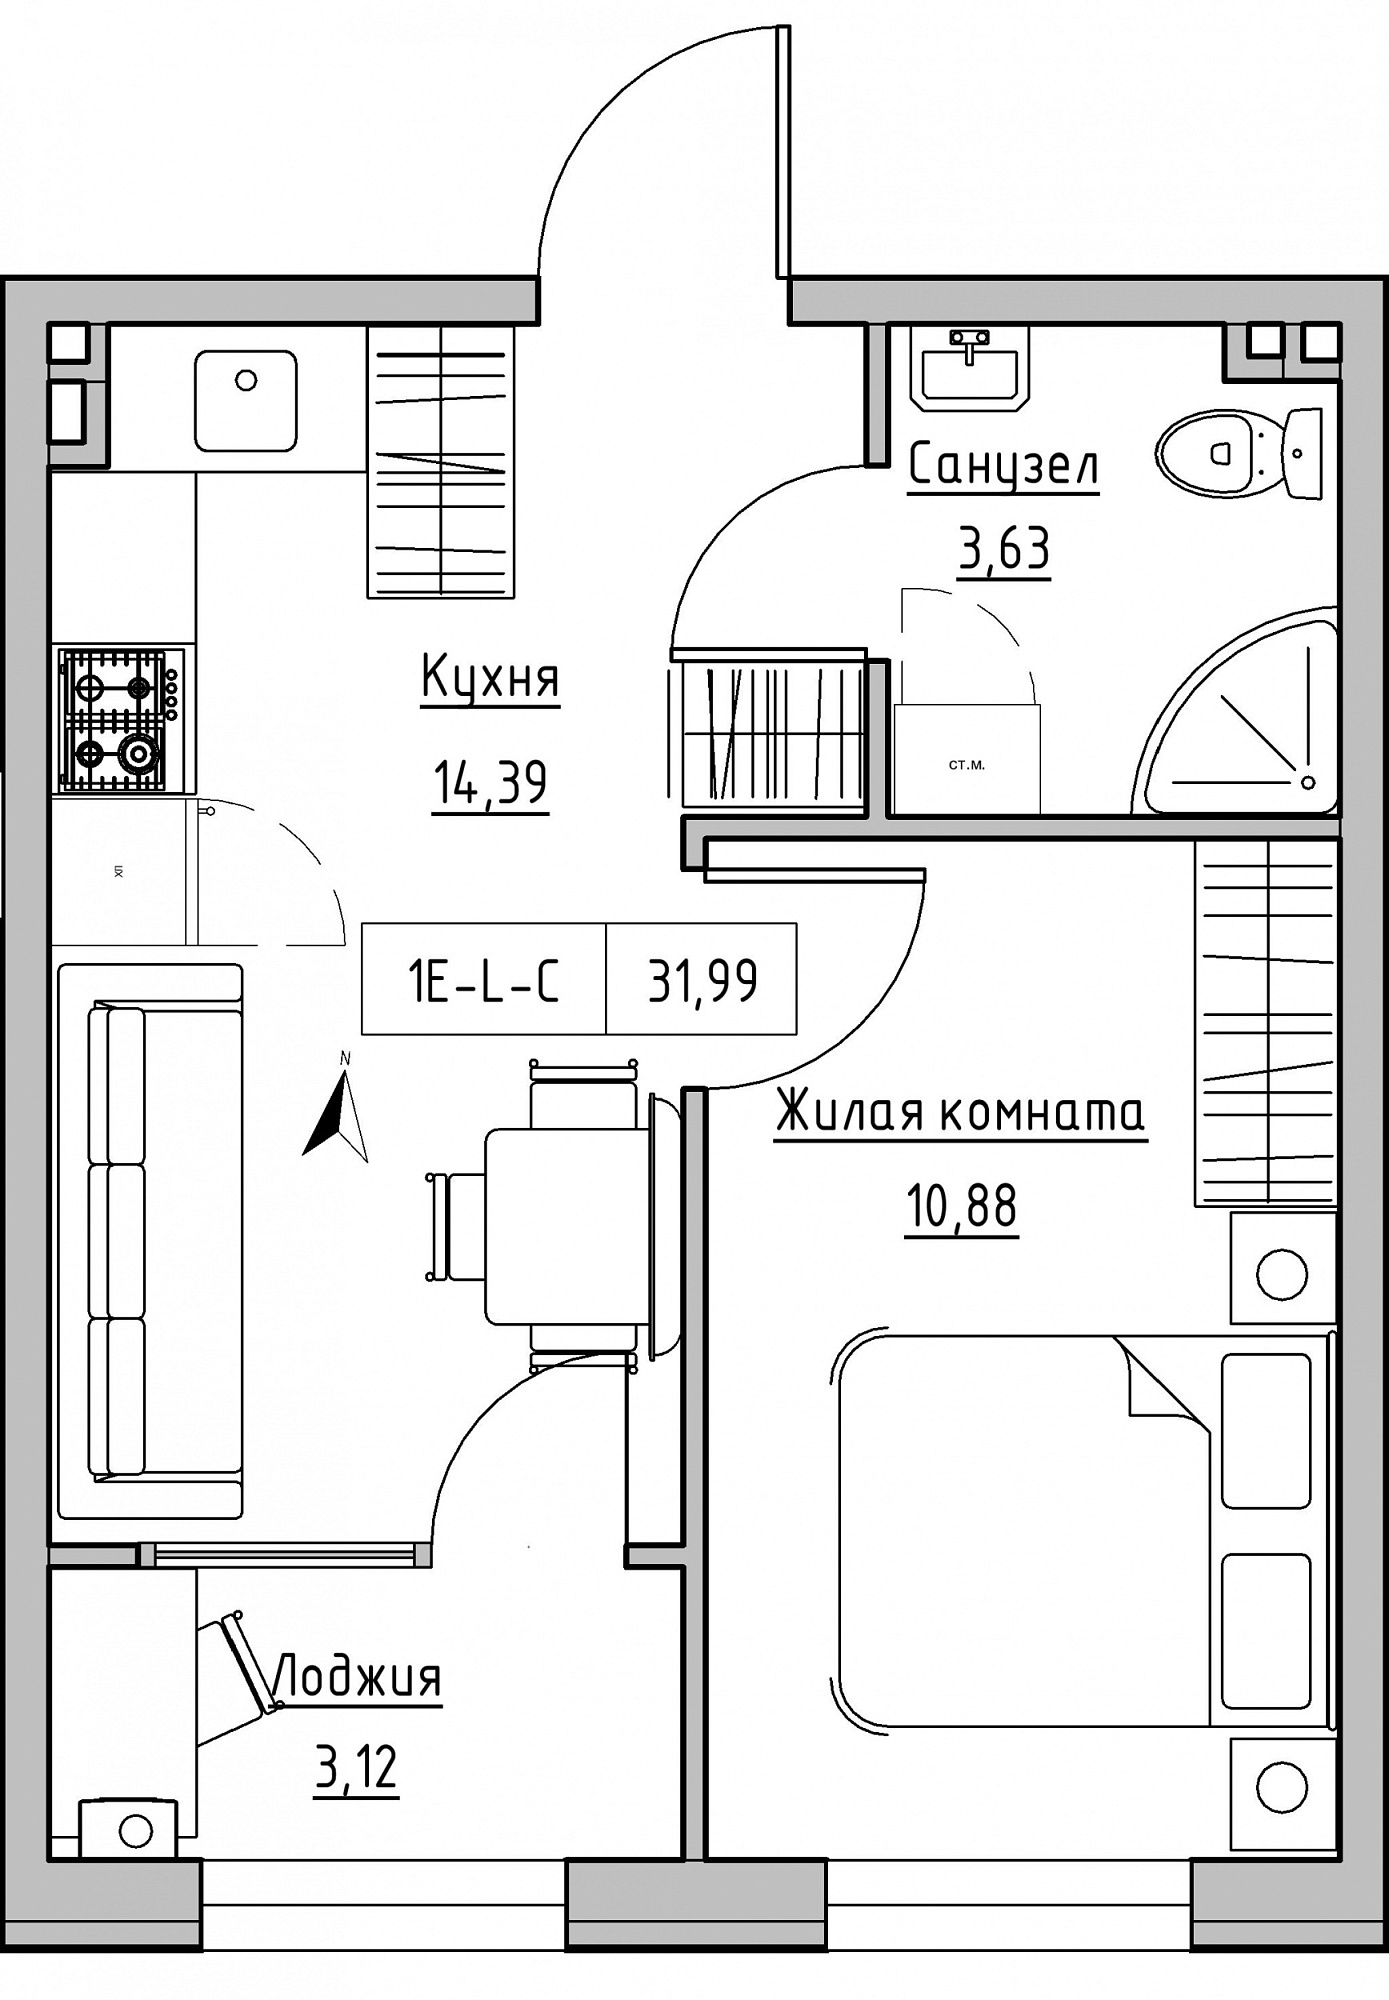 Планування 1-к квартира площею 31.99м2, KS-024-01/0006.